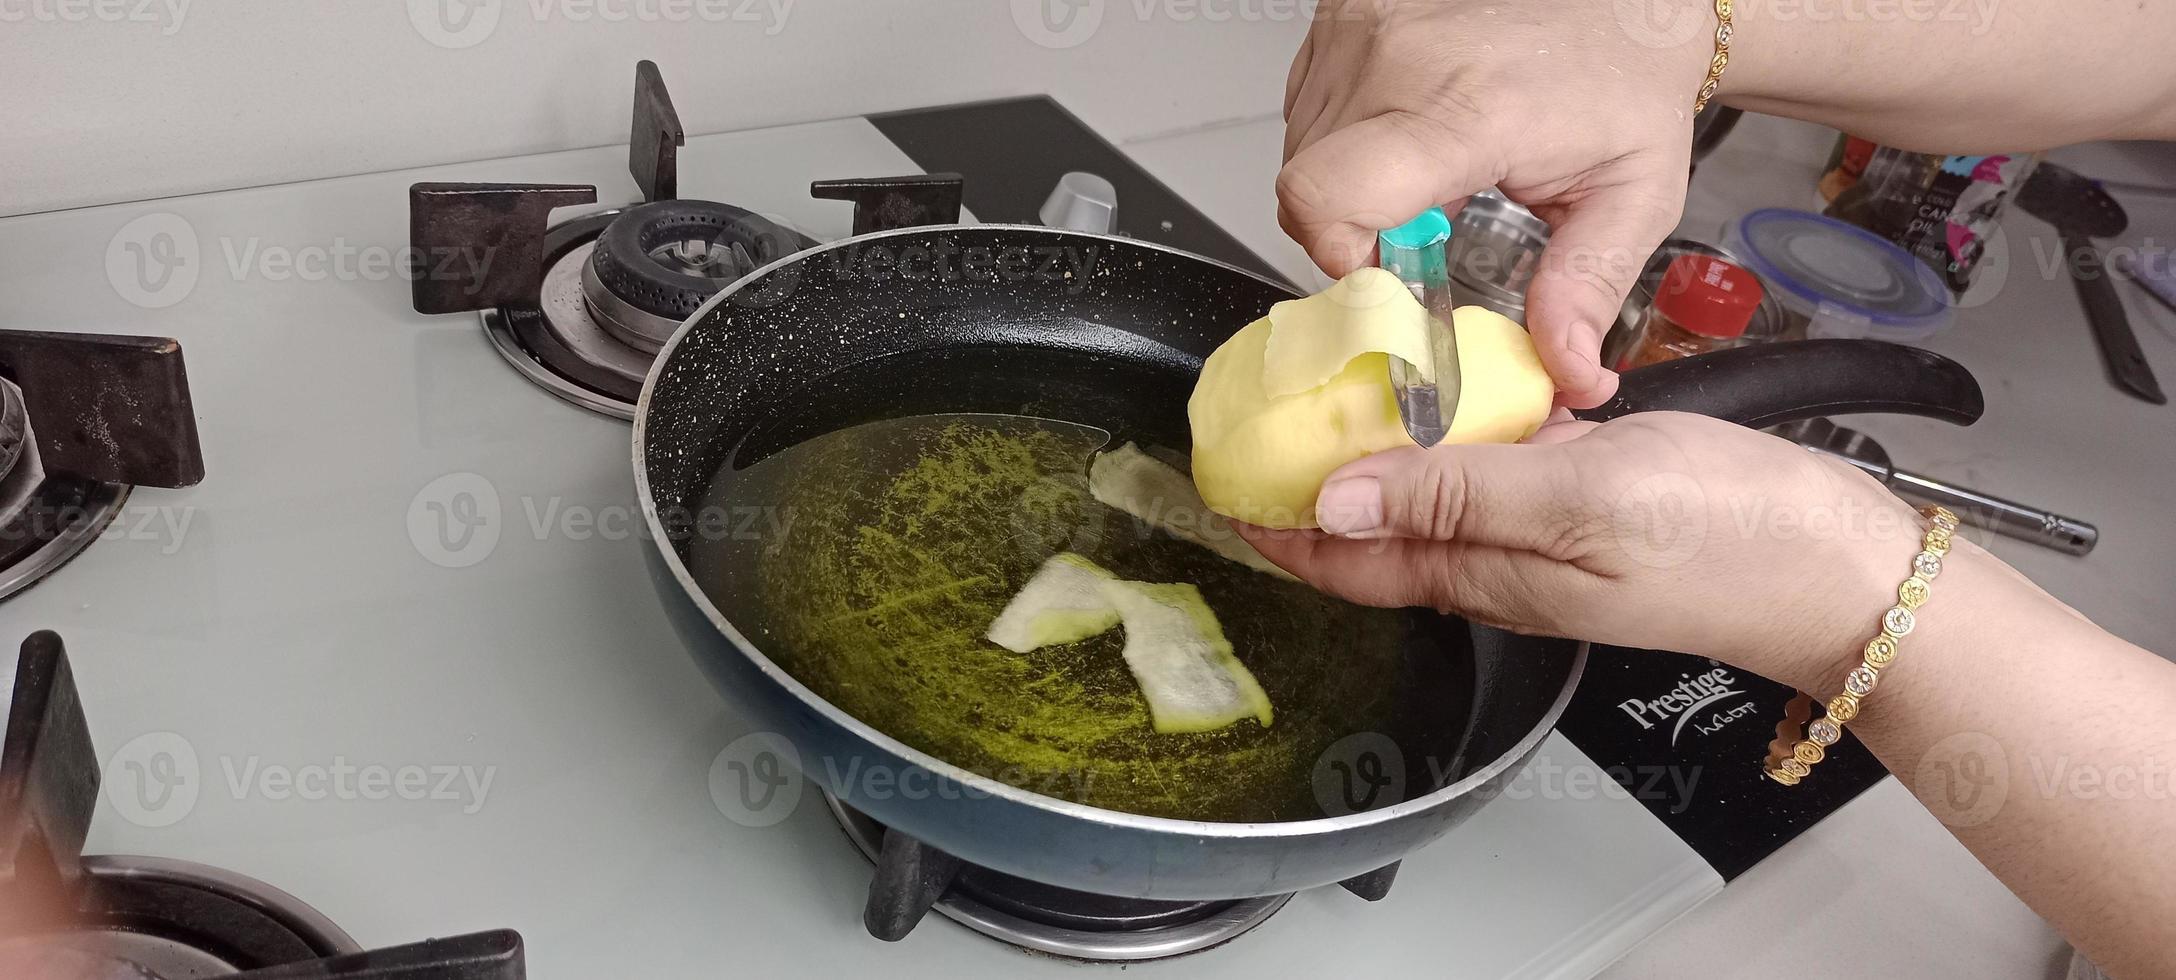 épluchures de pommes de terre dans l'huile pour la fabrication de croustilles, croustilles aalu photo